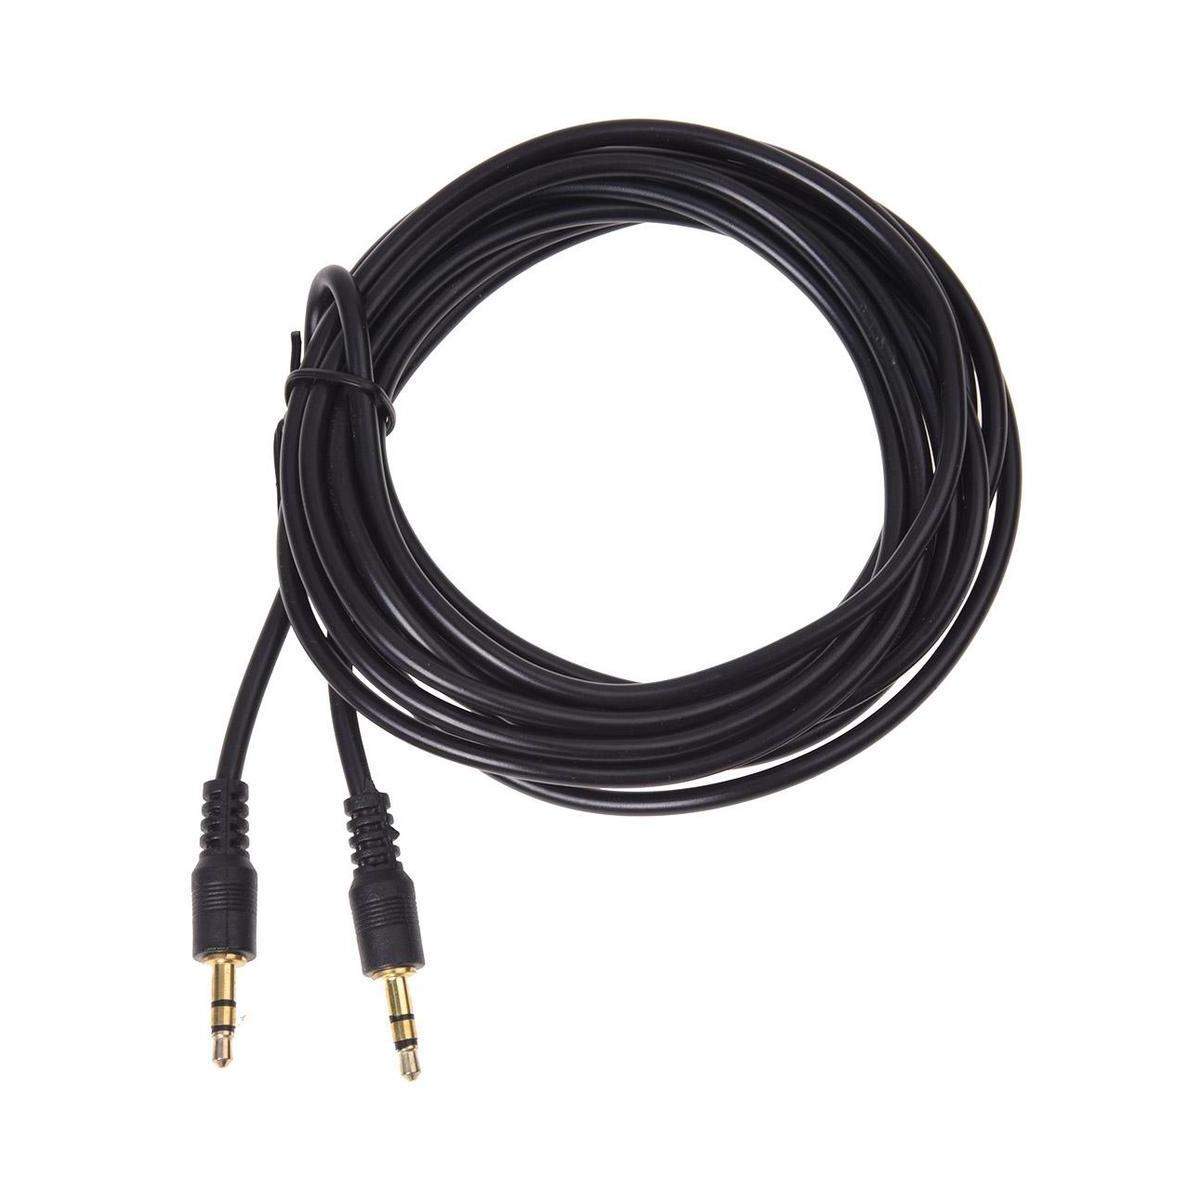 Cable negro de extension alargador audio mini Jack 3.5 mm Macho a